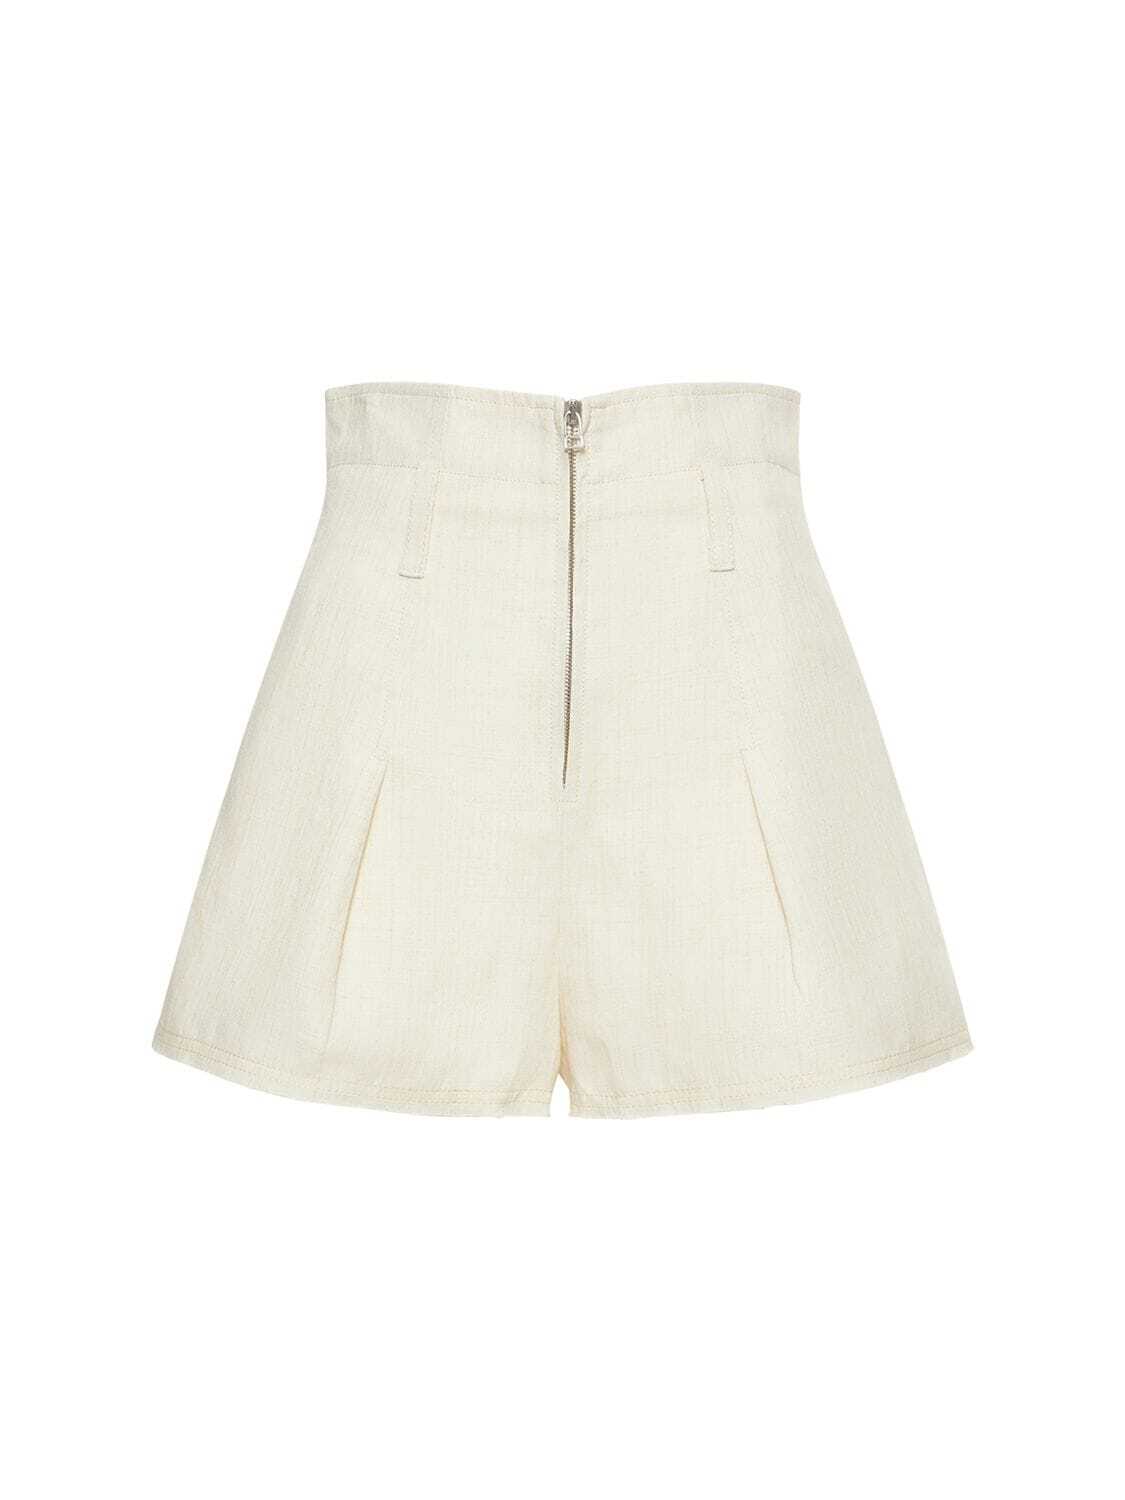 JACQUEMUS Le Short Santon Linen Blend Shorts in white